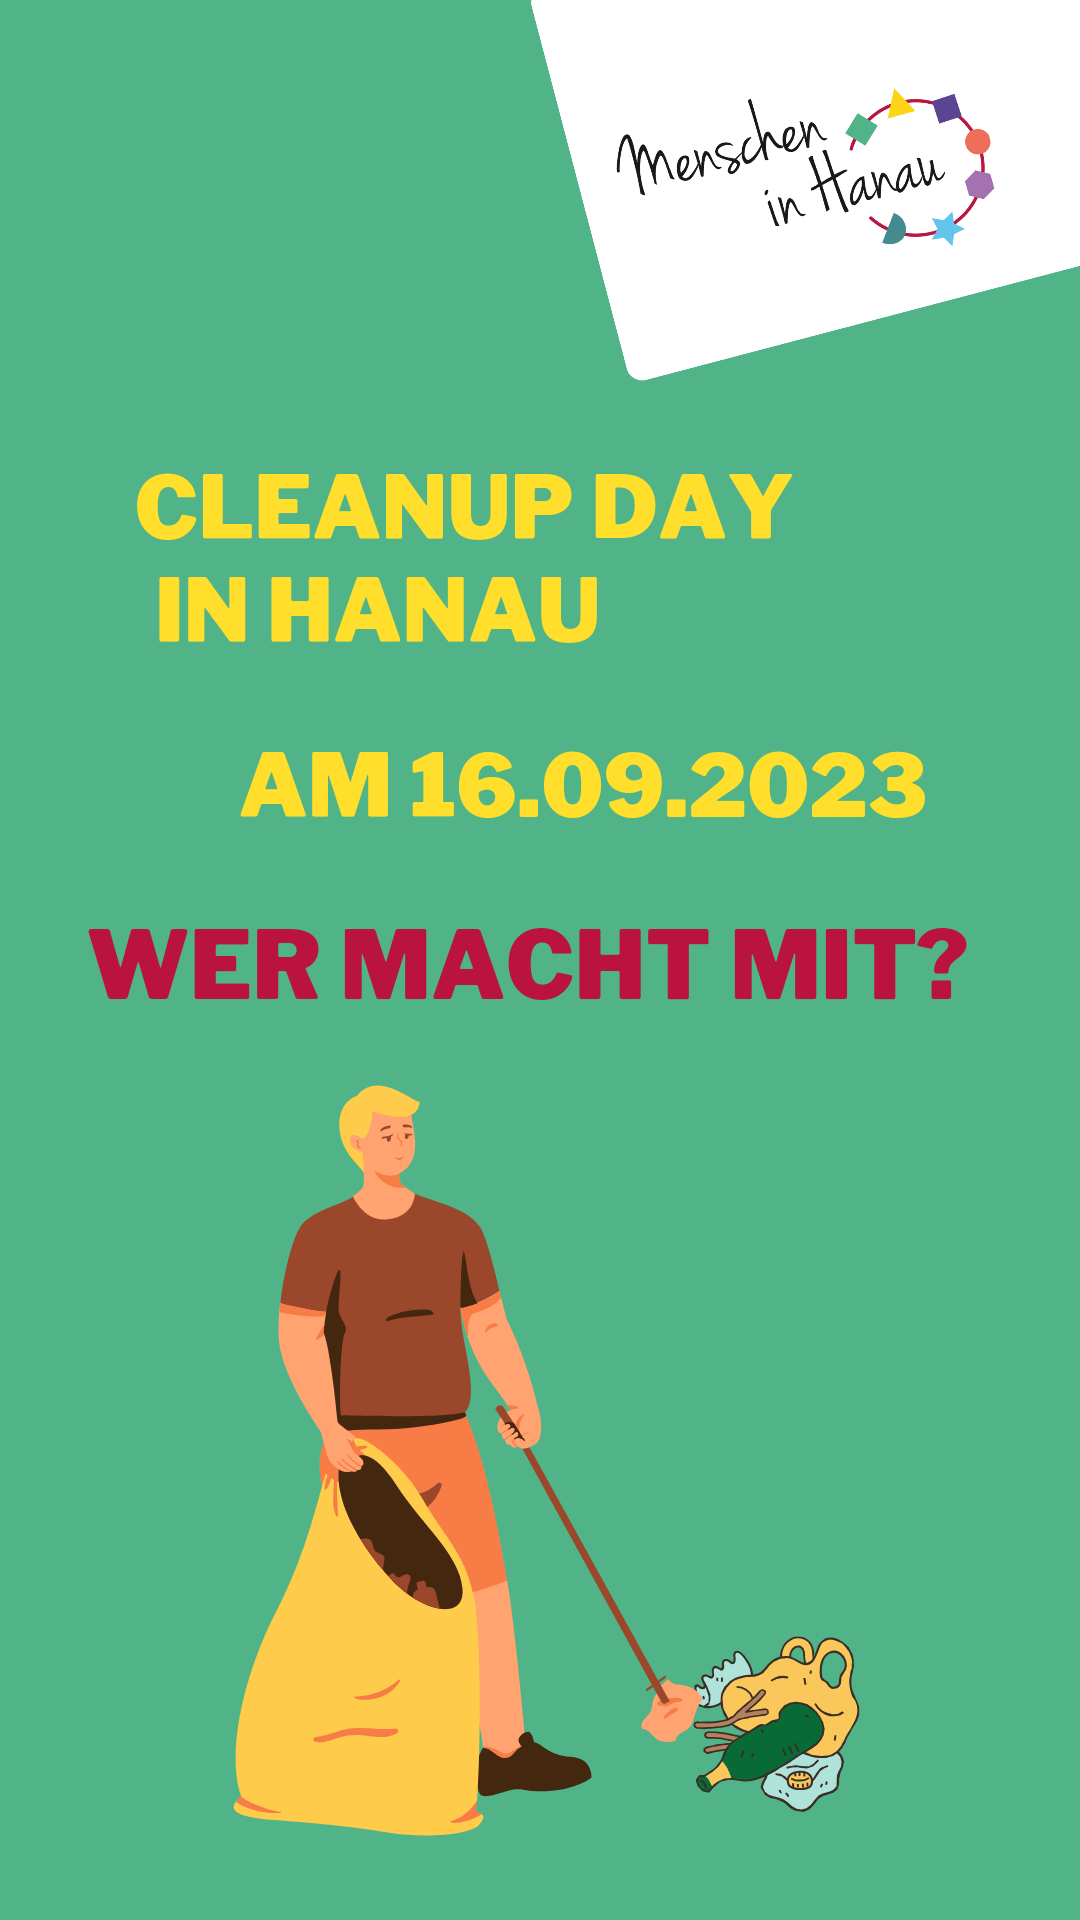 Ein Flyer auf grünem Hintergrund zum Clean up Day in Hanau. Eine Person mit Müllsack und Greifzange ist zu sehen.